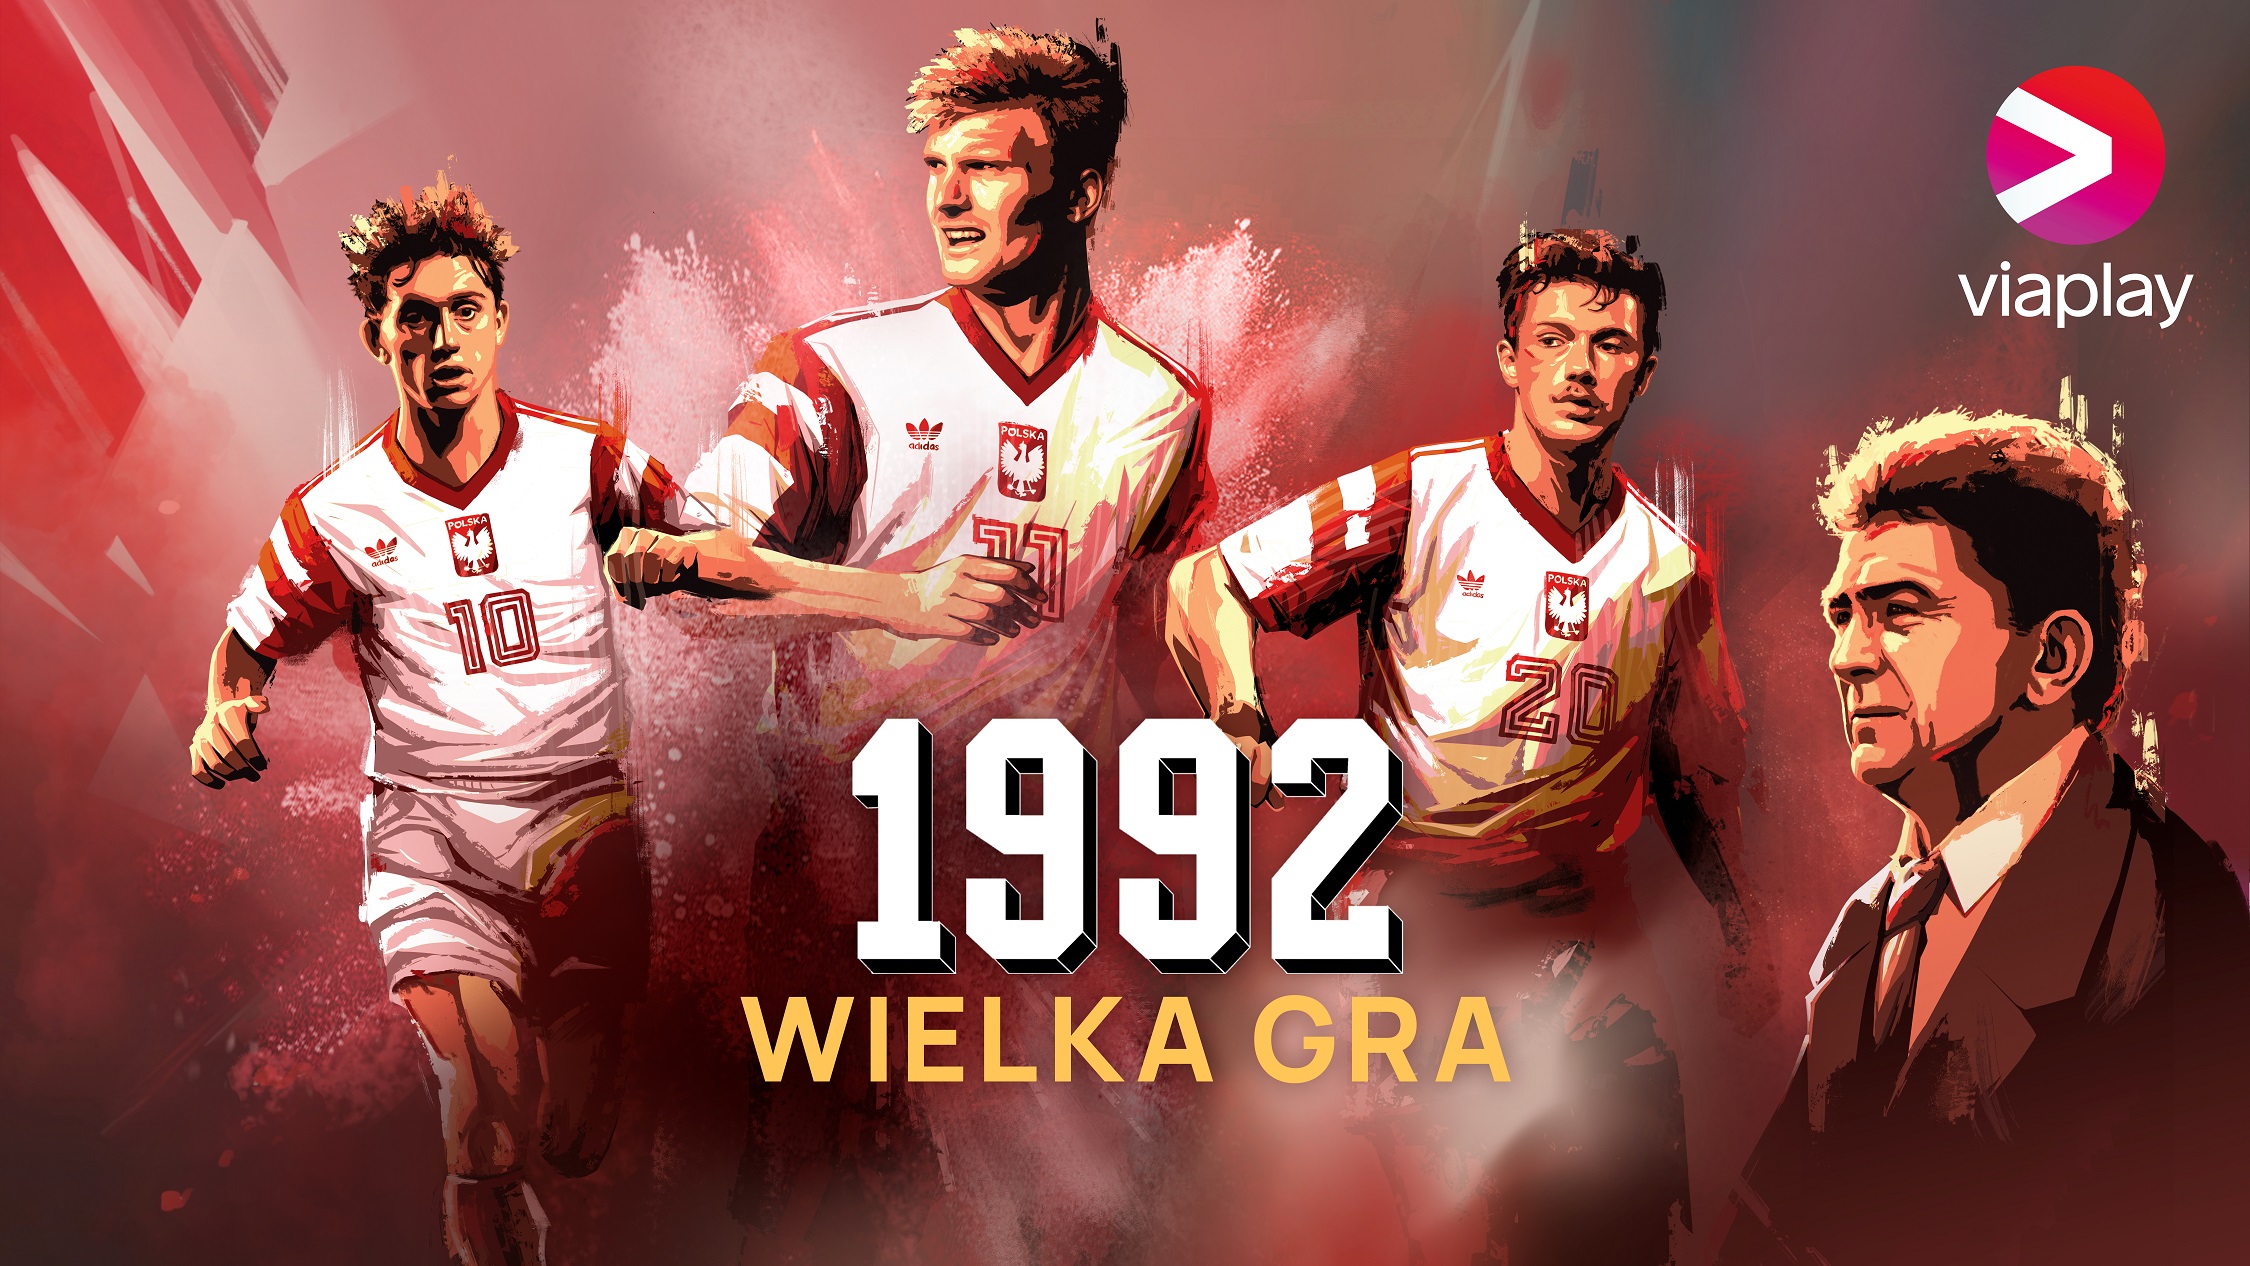 Pierwszy taniec pokolenia przemian. Ostatni wielki sukces polskiego futbolu. Serial „1992: Wielka Gra” w Viaplay!